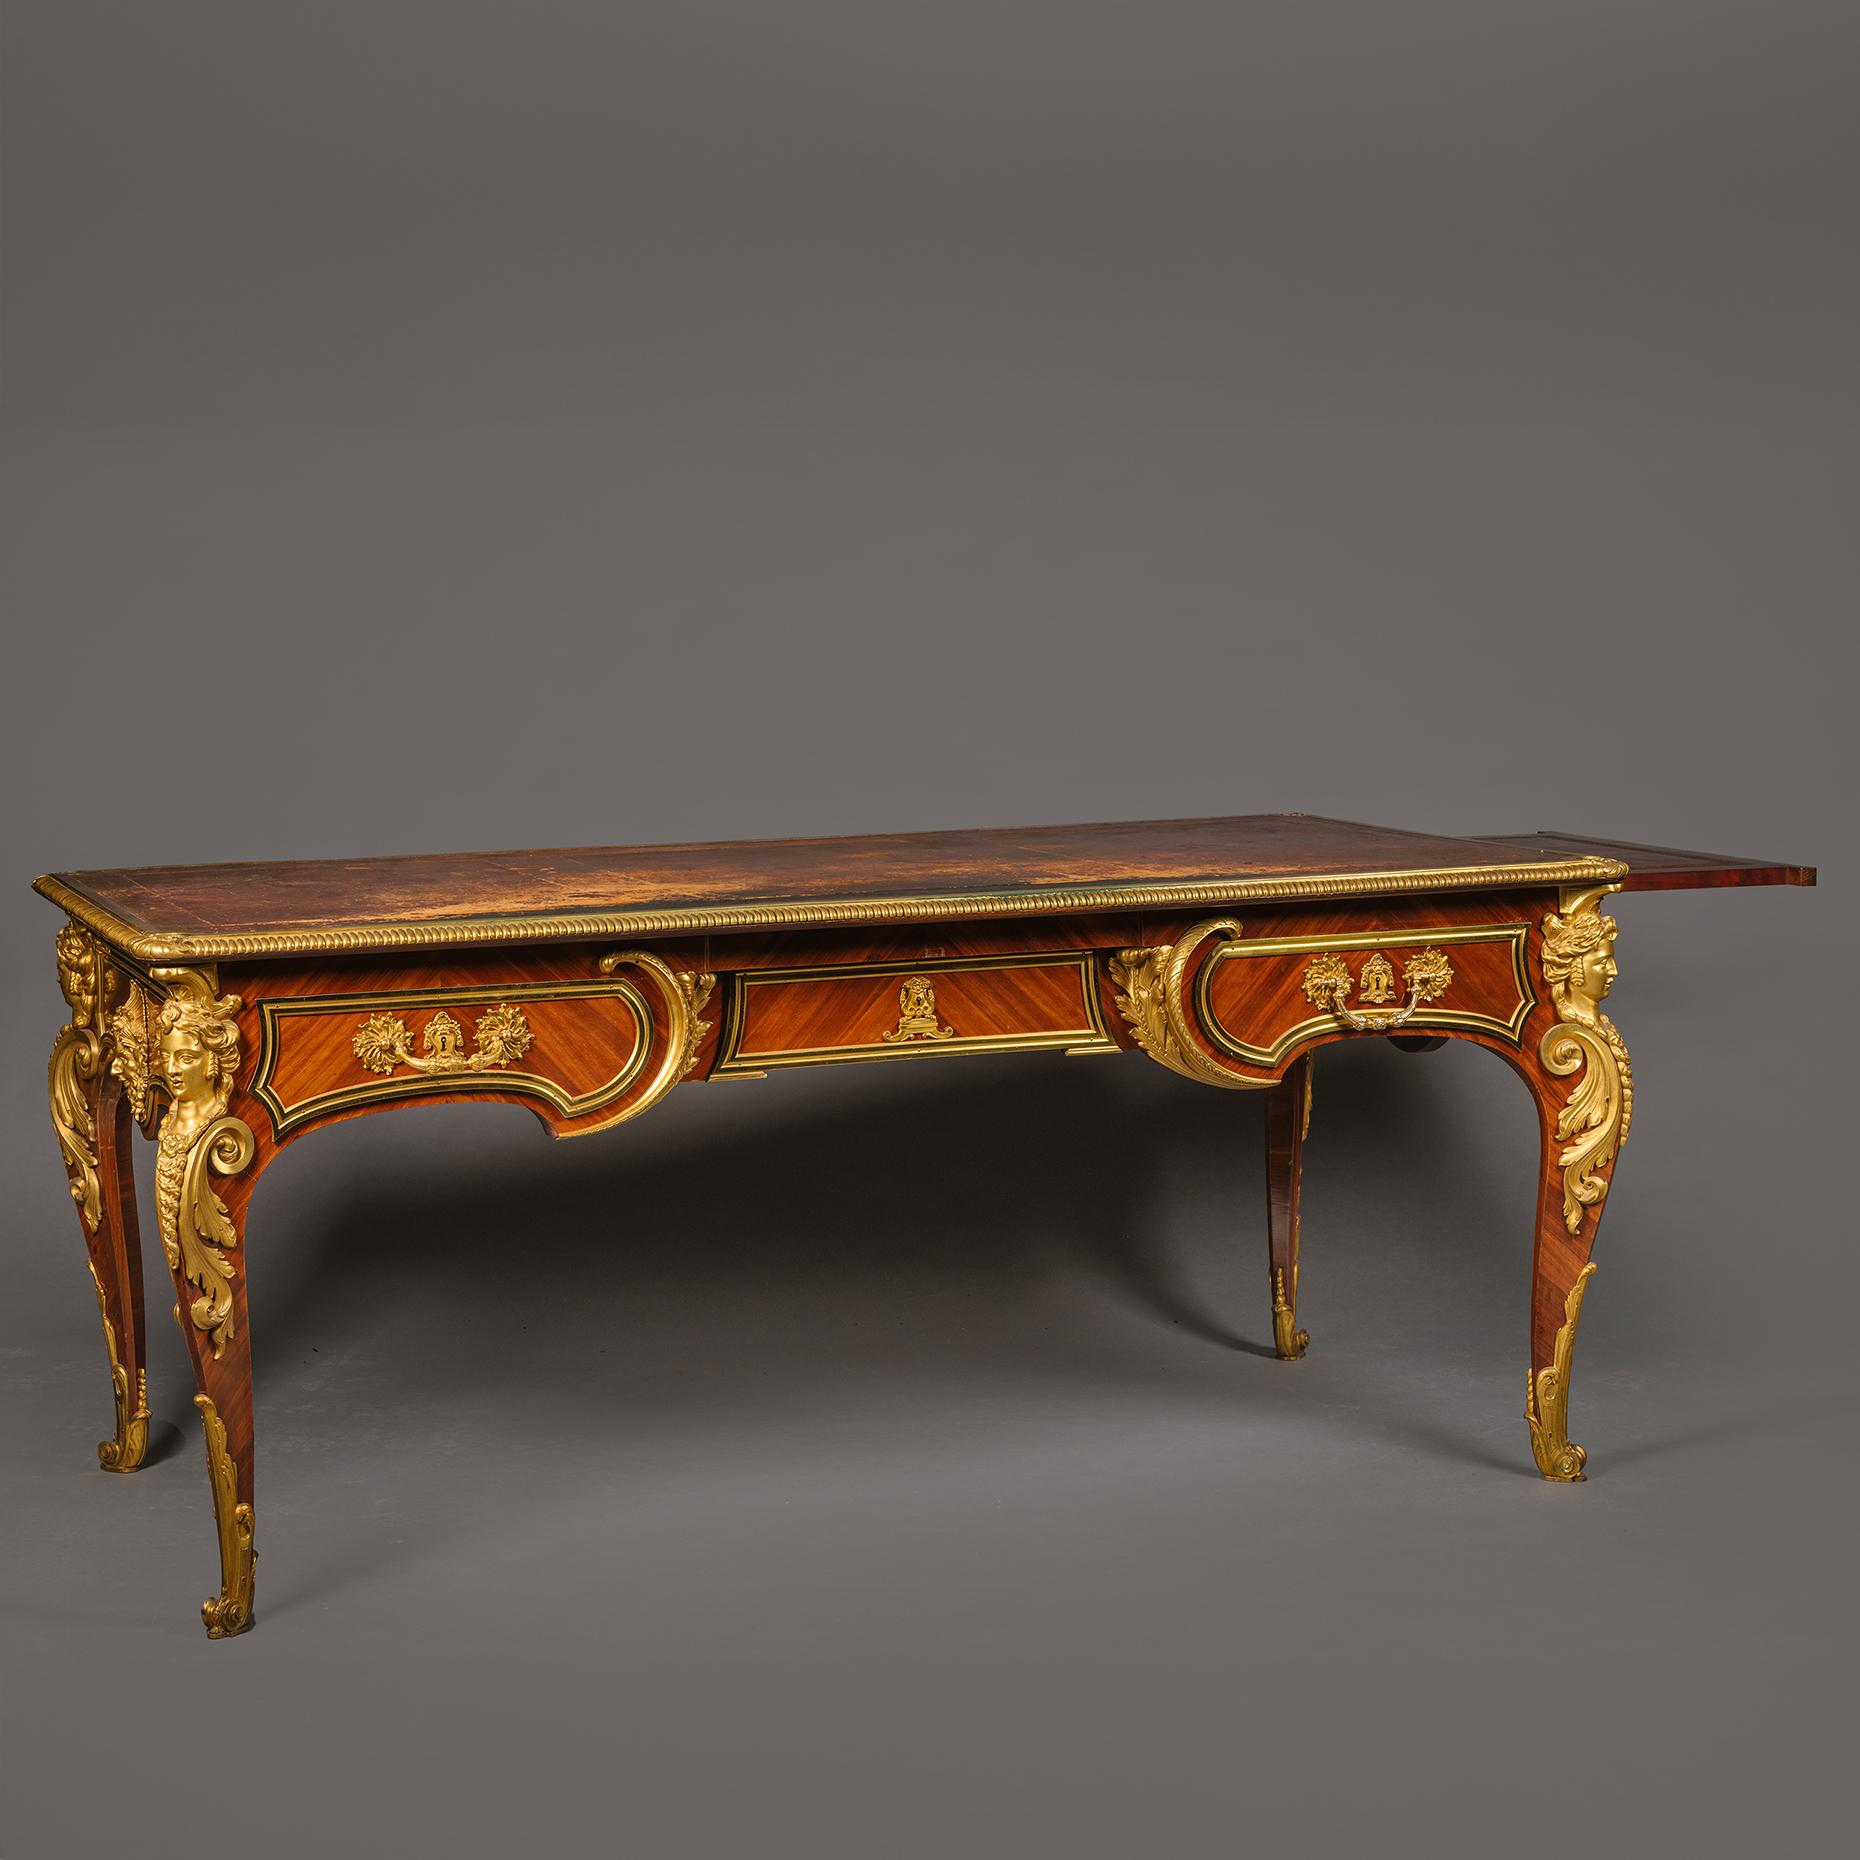 Bureau plat en acajou monté en bronze doré, de style Louis XIV, par Cueunières, Paris. D'après le modèle de Charles Cressent. 

Estampillé sur le côté inférieur 